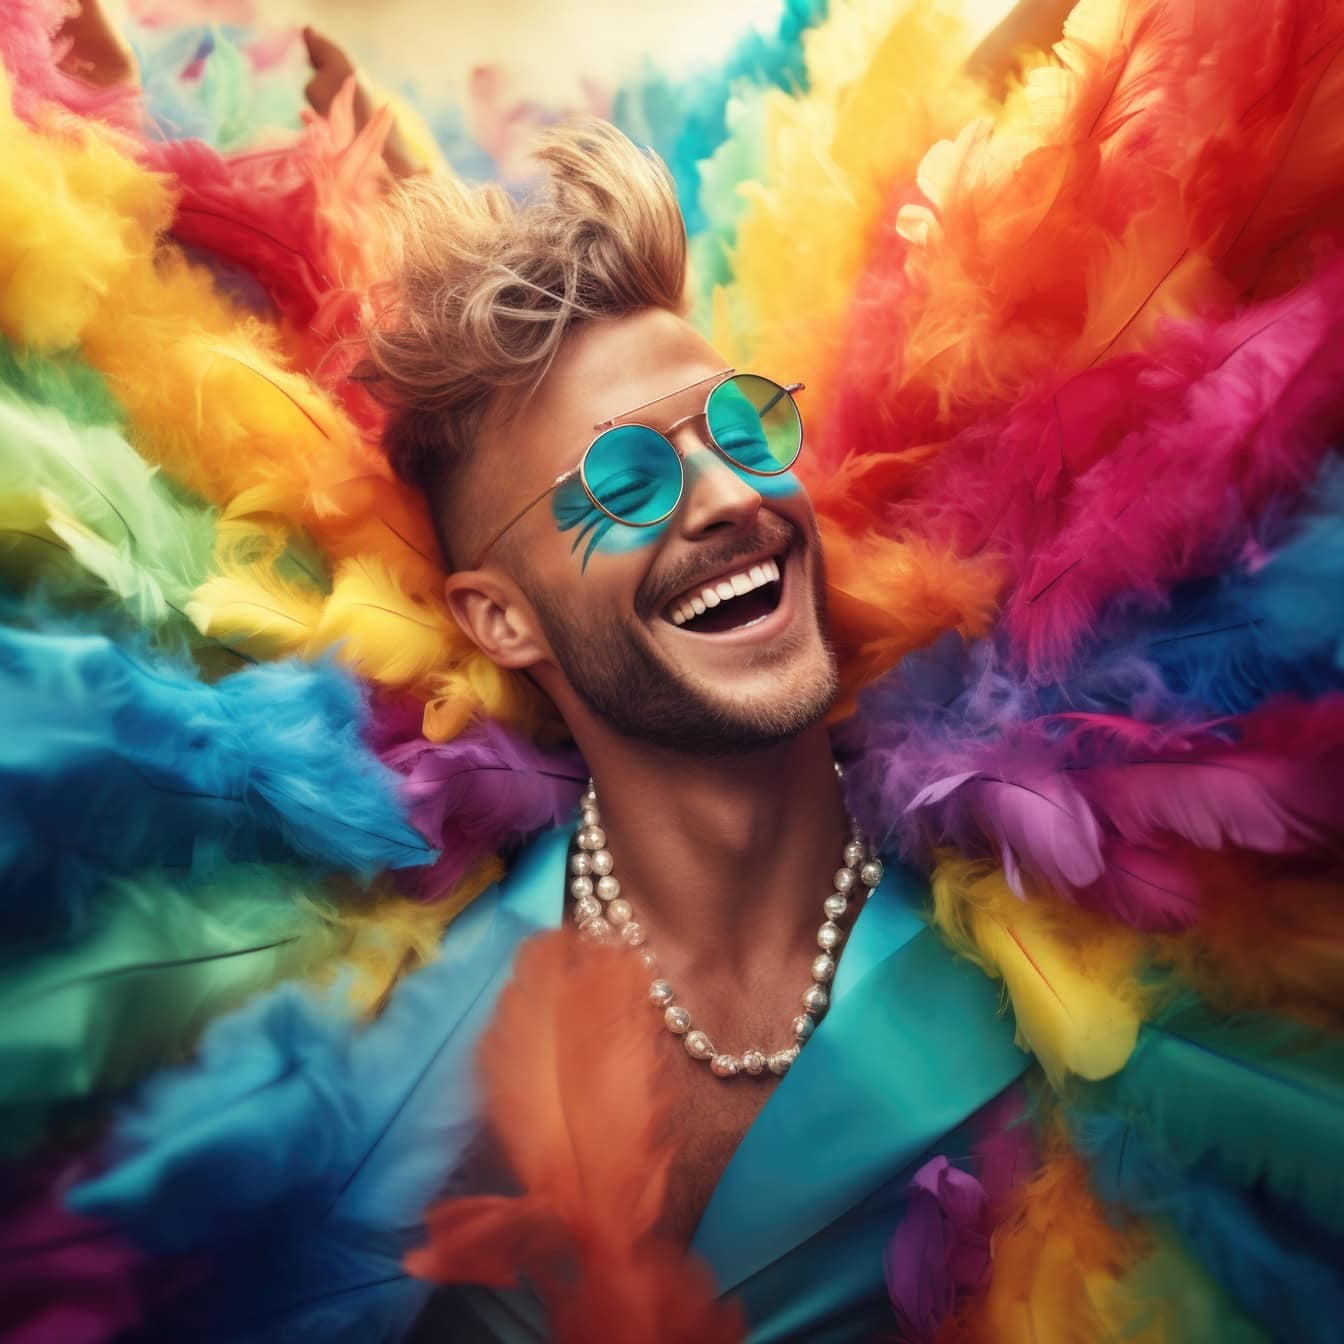 Nasmijani mladić šarenog perja nosi bisernu ogrlicu na karnevalu, ilustracija slobode i sreće